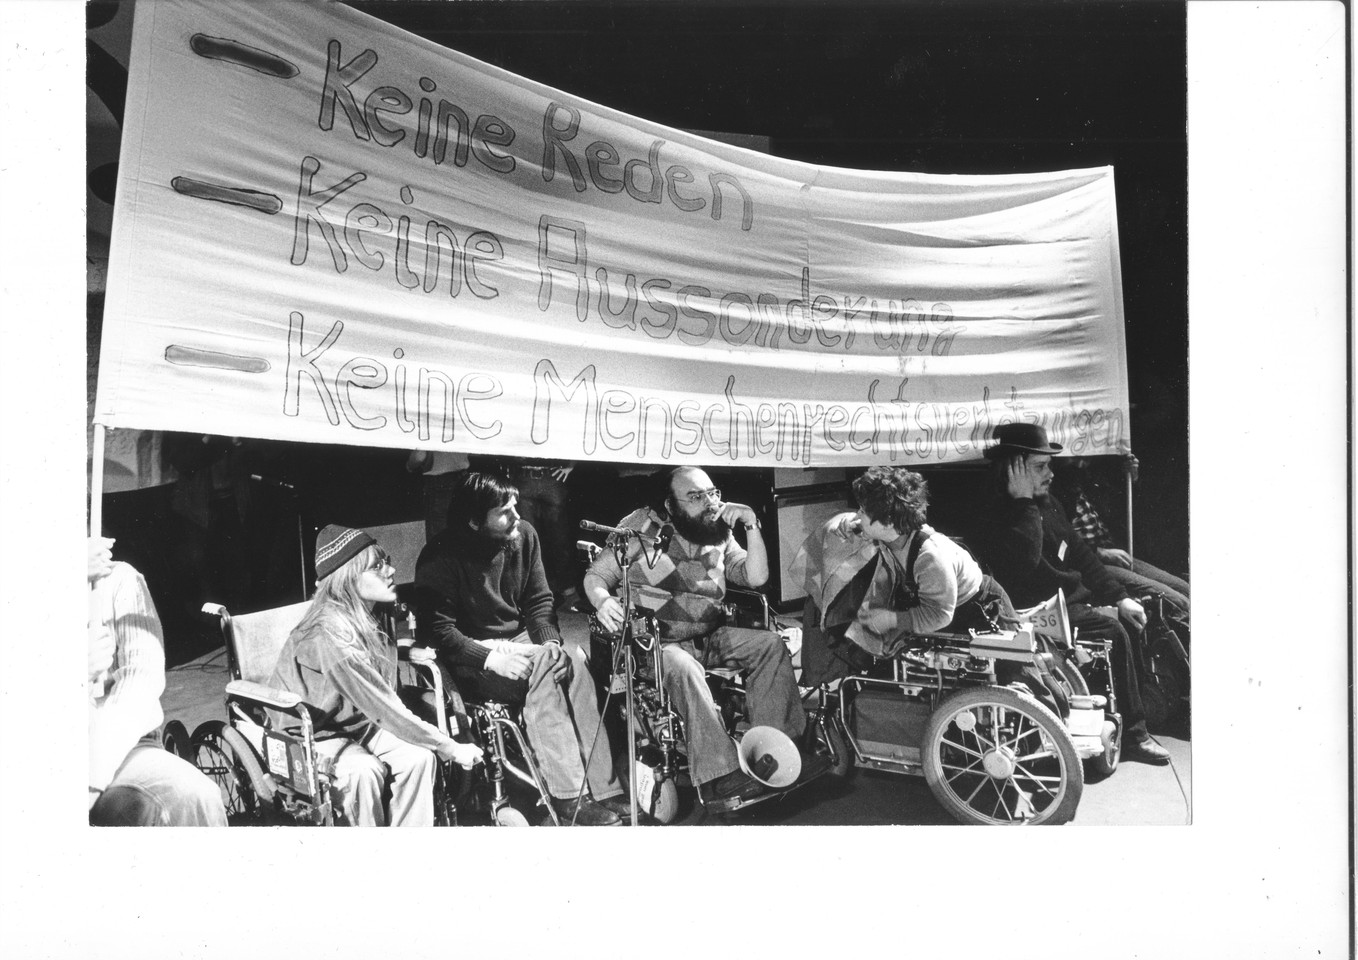 Initiativgruppen aus 15 Städten veranstalteten im Dezember 1981 in Dortmund eine öffentliche Anhörung über Menschenrechtsverletzungen.